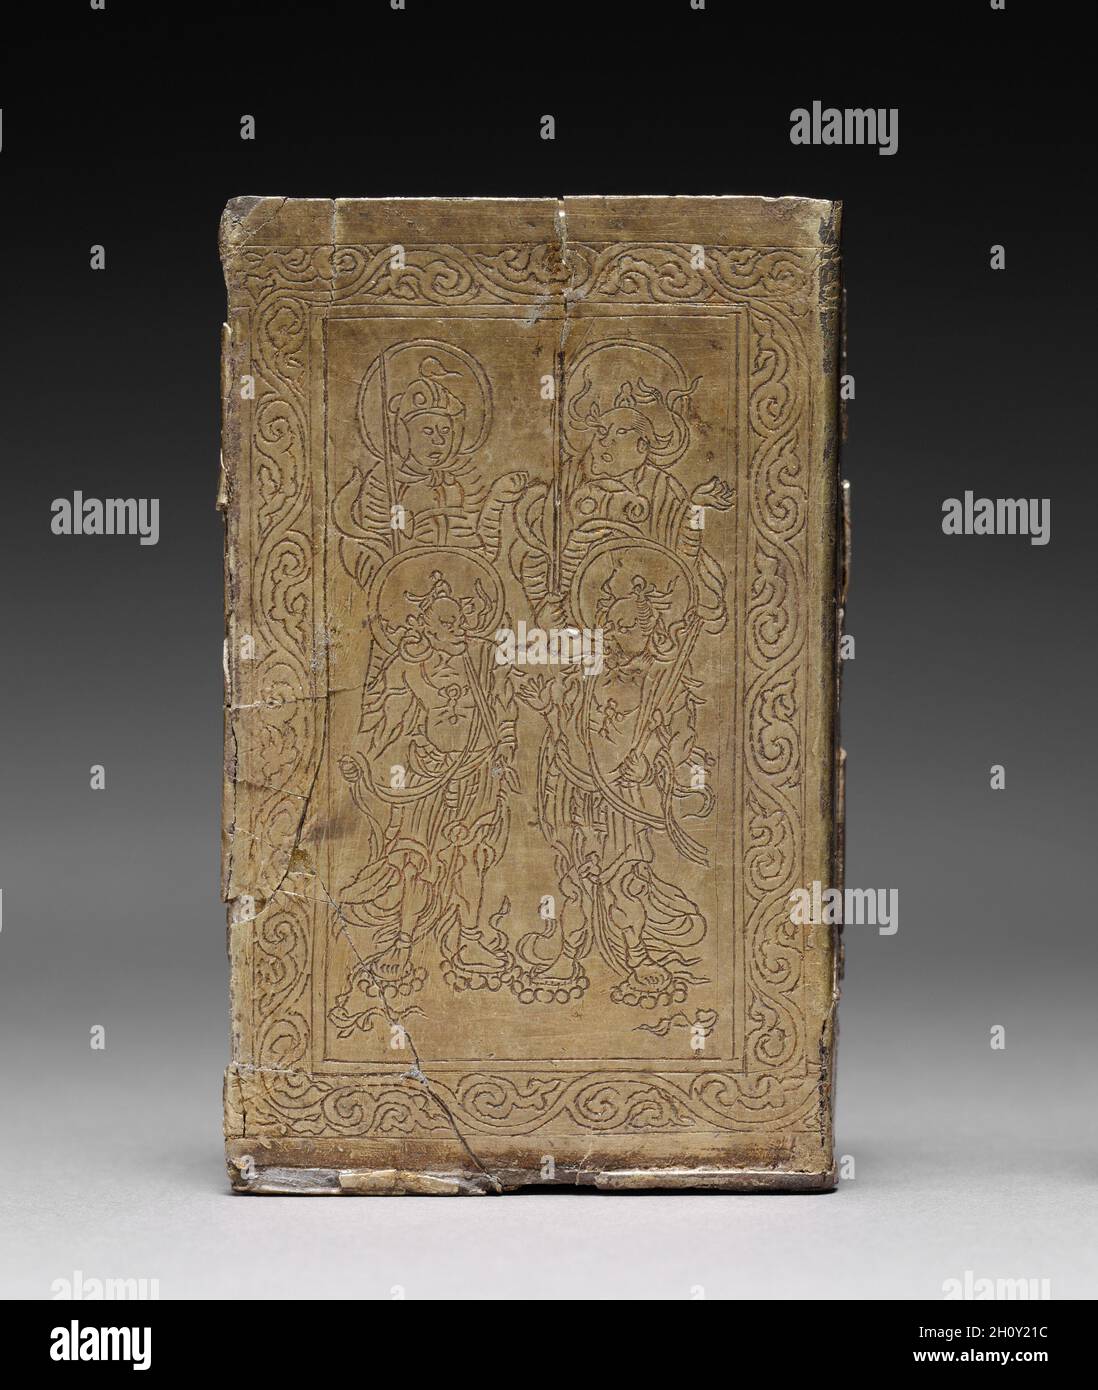 Contenitore Sutra buddista, 1100-1200. Corea, periodo Goryeo (918-1392). Argento dorato con disegni buddisti incisi; totale: 9.5 x 6 x 2.3 cm (3 3/4 x 2 3/8 x 7/8 pollici). Questo contenitore è stato progettato per contenere sutra, o testi sacri buddisti. I quattro Re Celeste, uno per ciascuna delle direzioni cardinali, sono incisi all'esterno del contenitore. Le immagini dei quattro Re Celeste si trovano spesso su contenitori coreani per reliquie sacre e sutra, e sono simboliche del desiderio di preservare gli insegnamenti del Buddha. Foto Stock